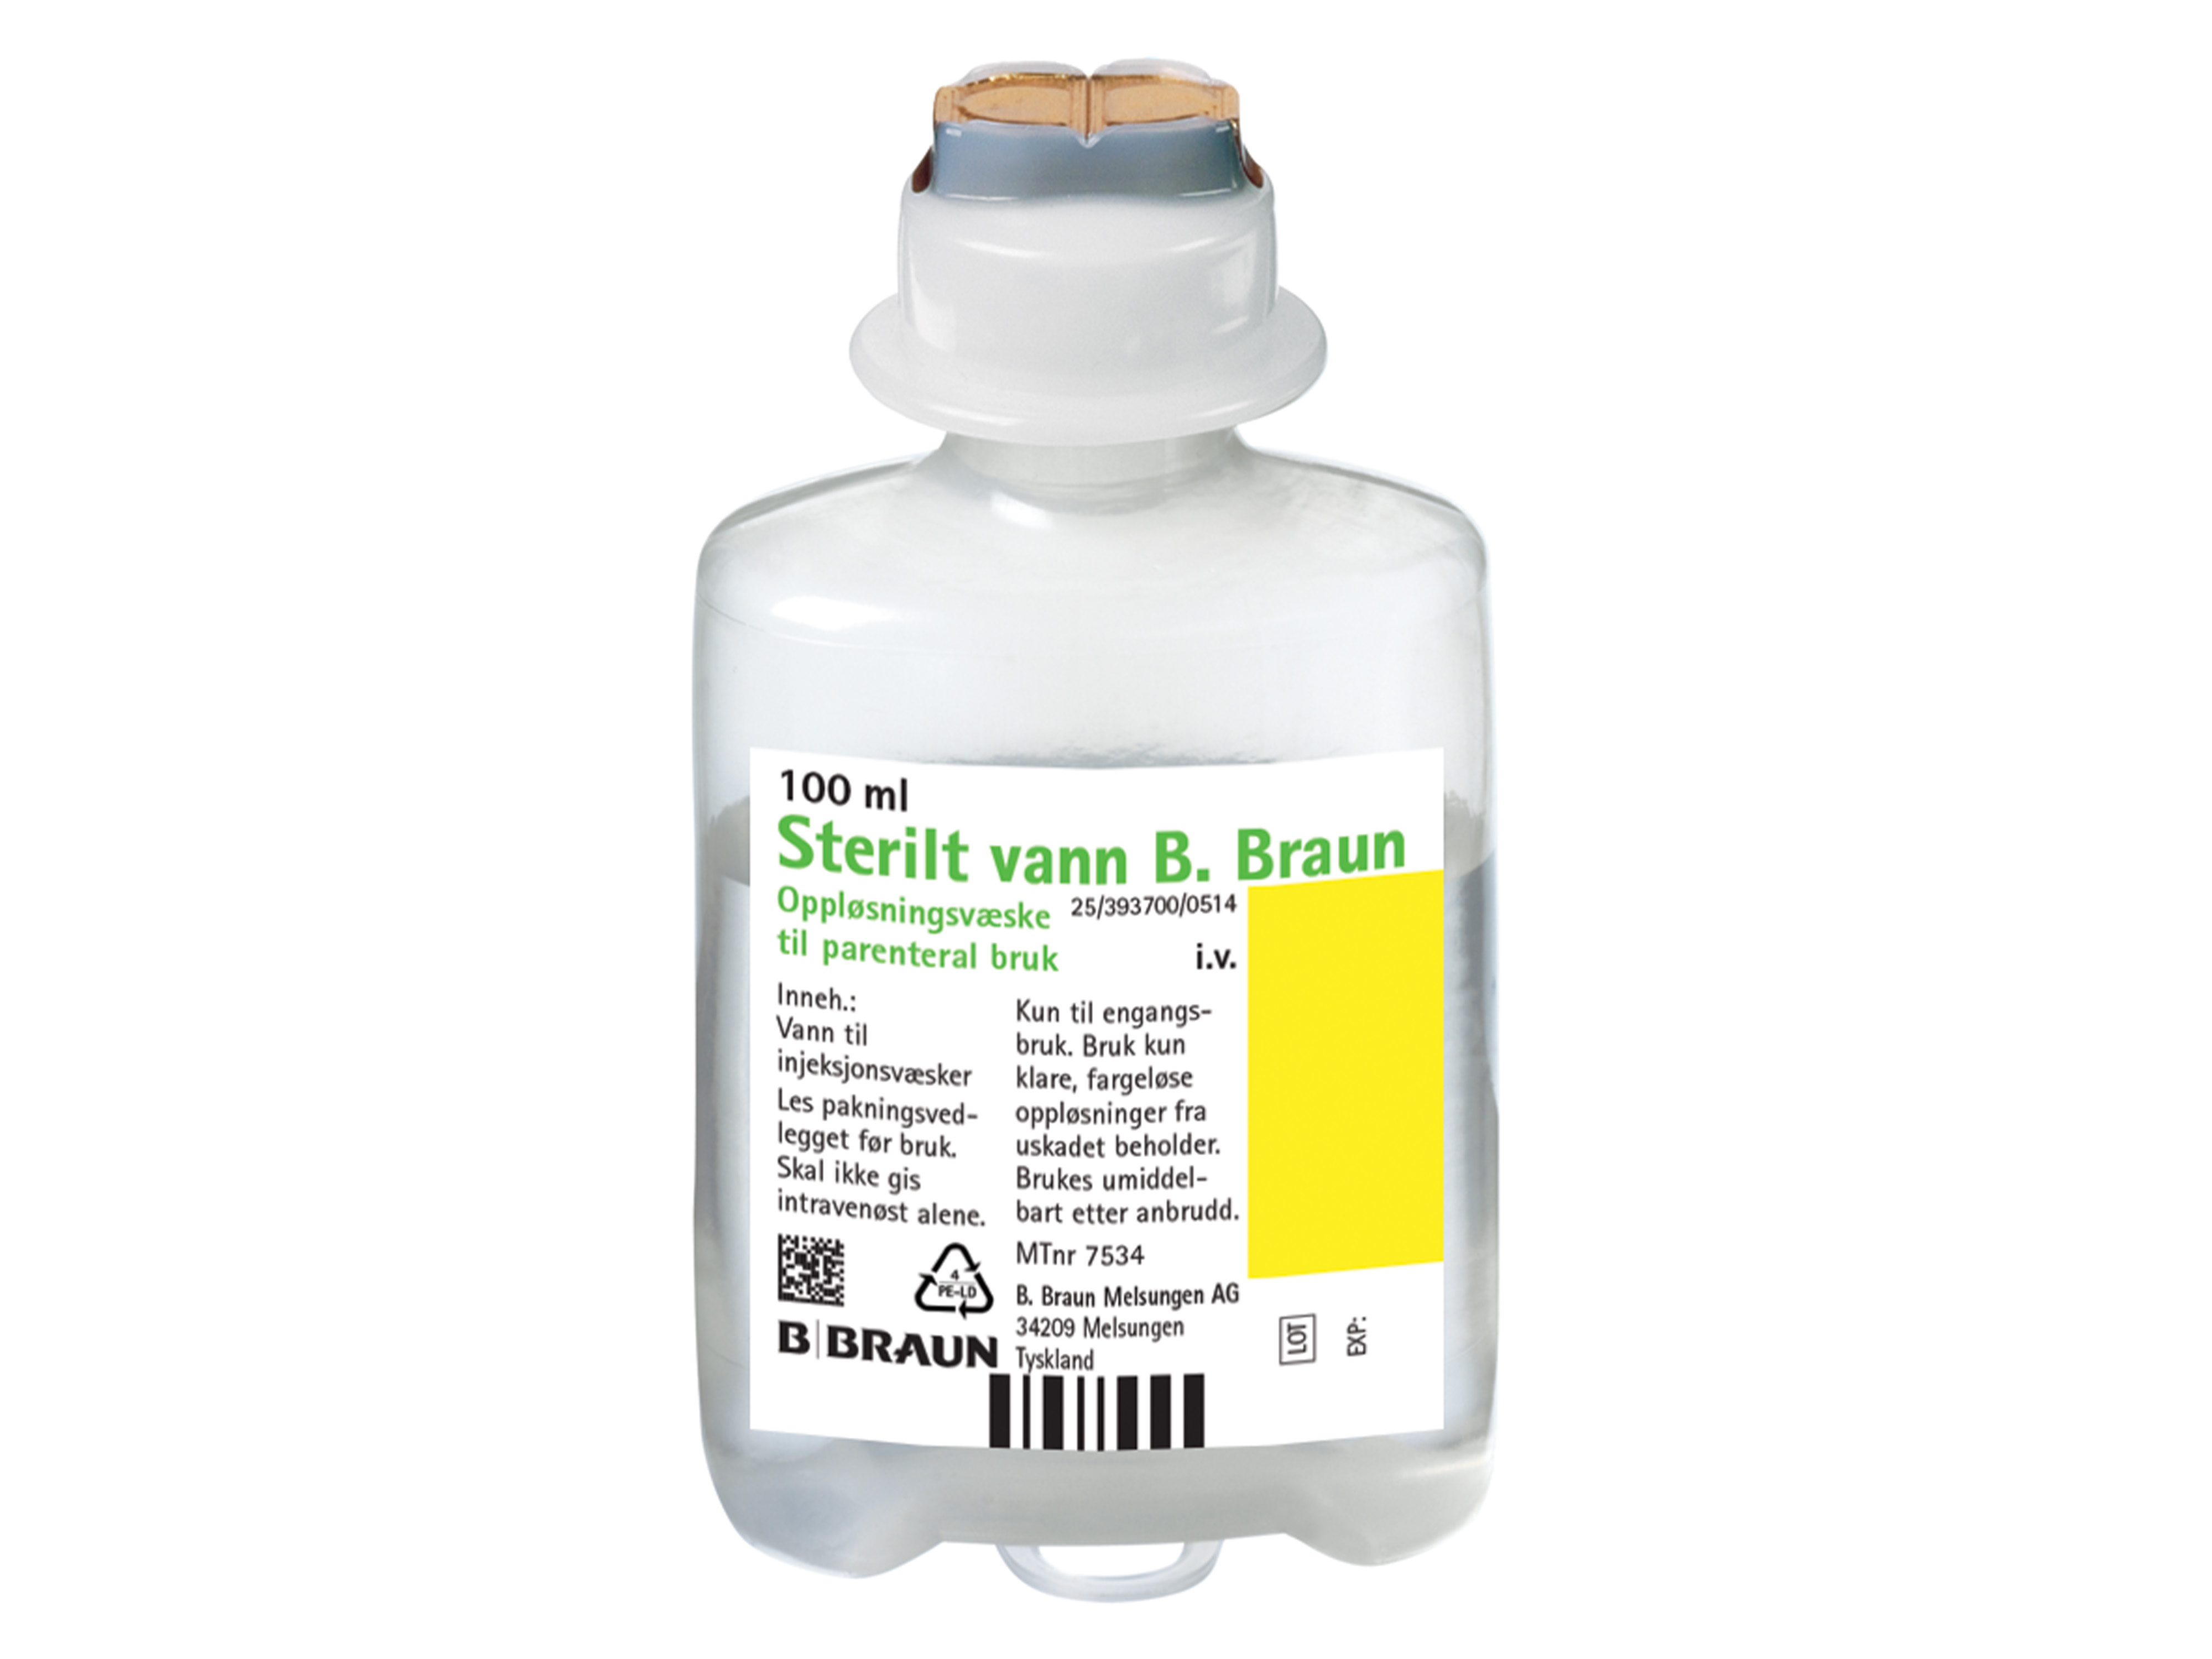 B. Braun Sterilt vann (til injeksjon) ecoflack plus, 20 x 100 ml.